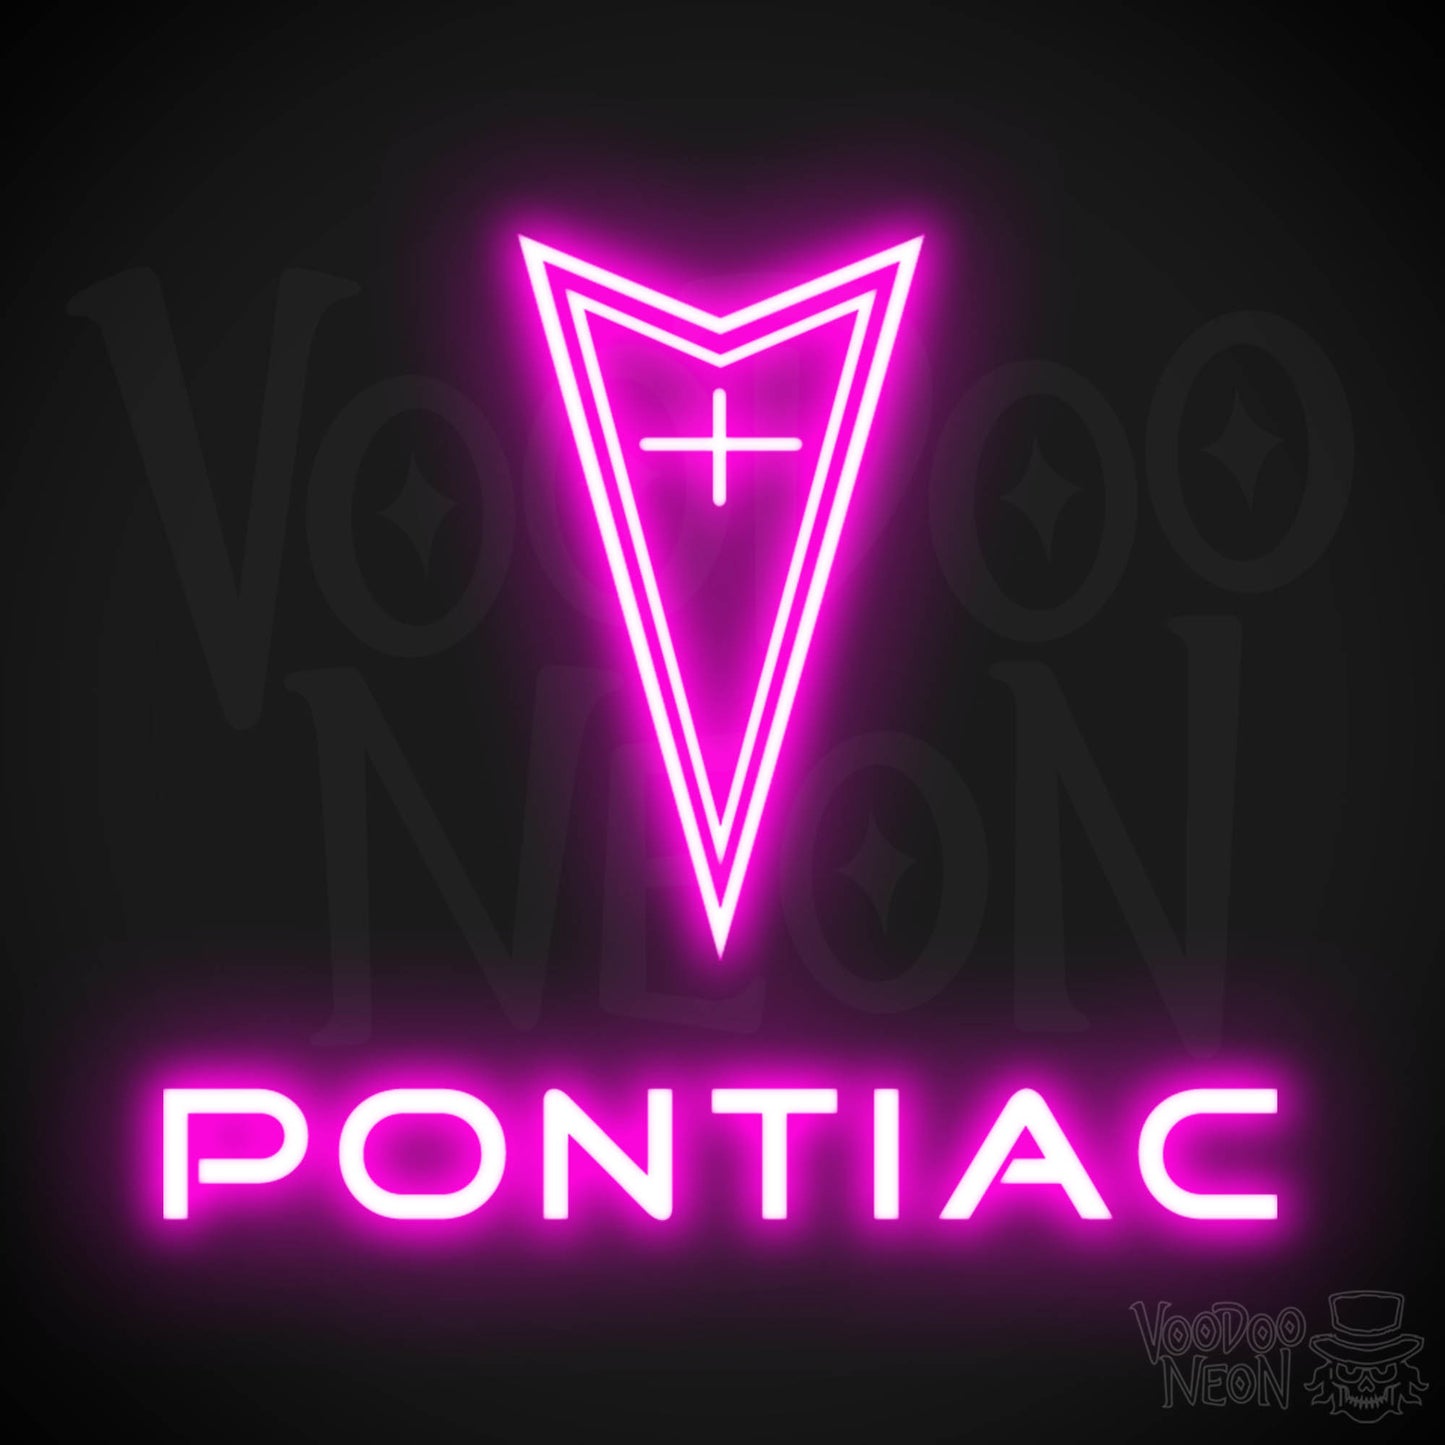 Pontiac Neon Sign - Pontiac Sign - Pontiac Decor - Wall Art - Color Pink